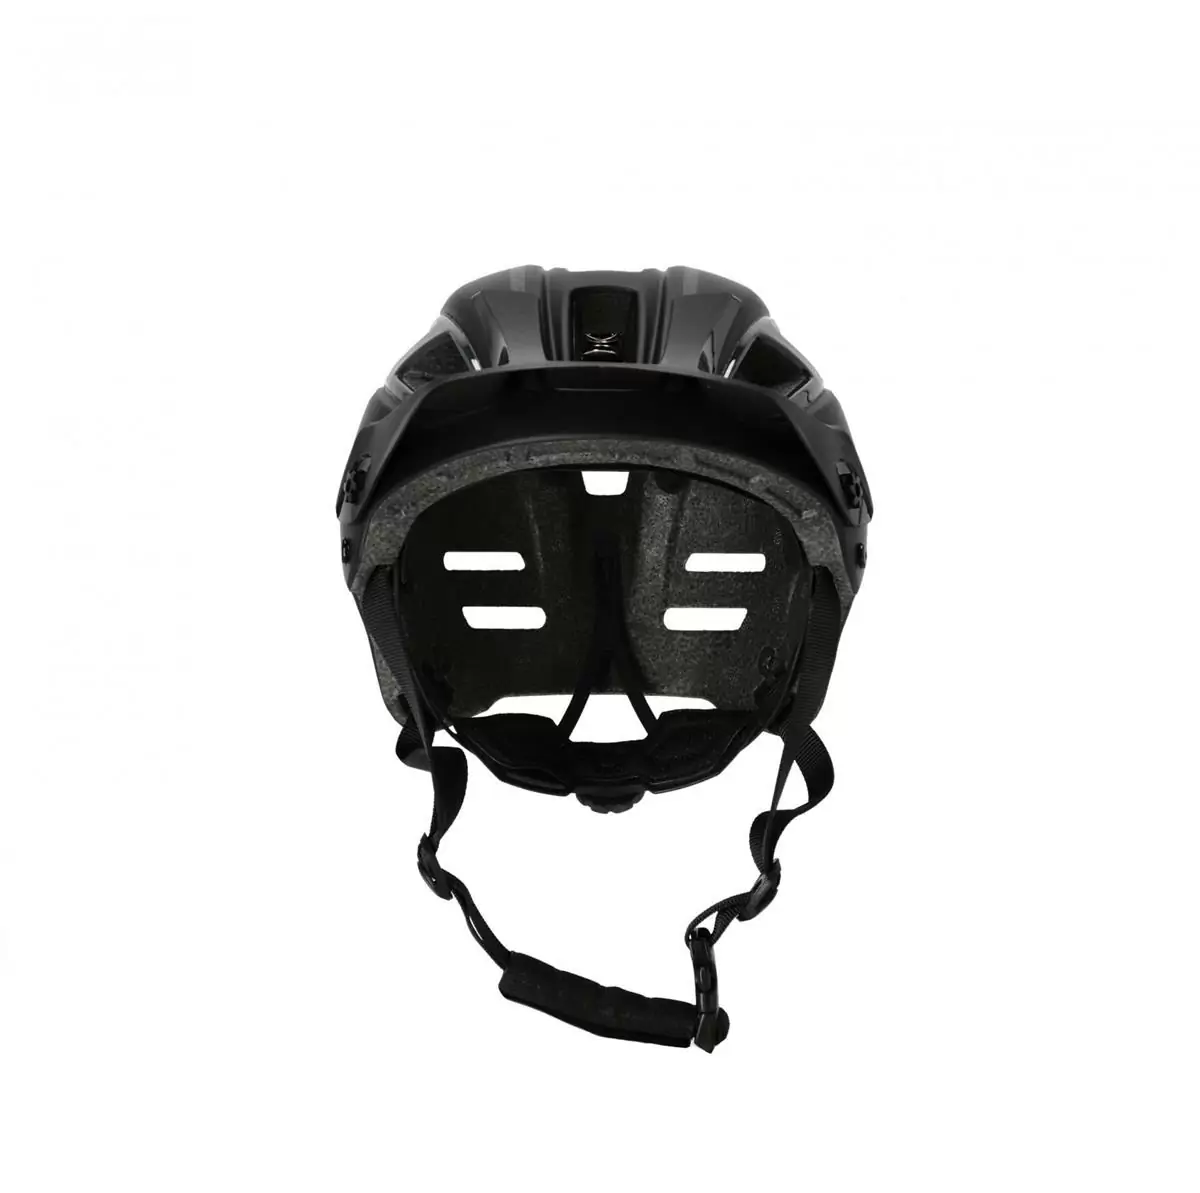 Helmet DoubleP black size L/XL (59-62) #1